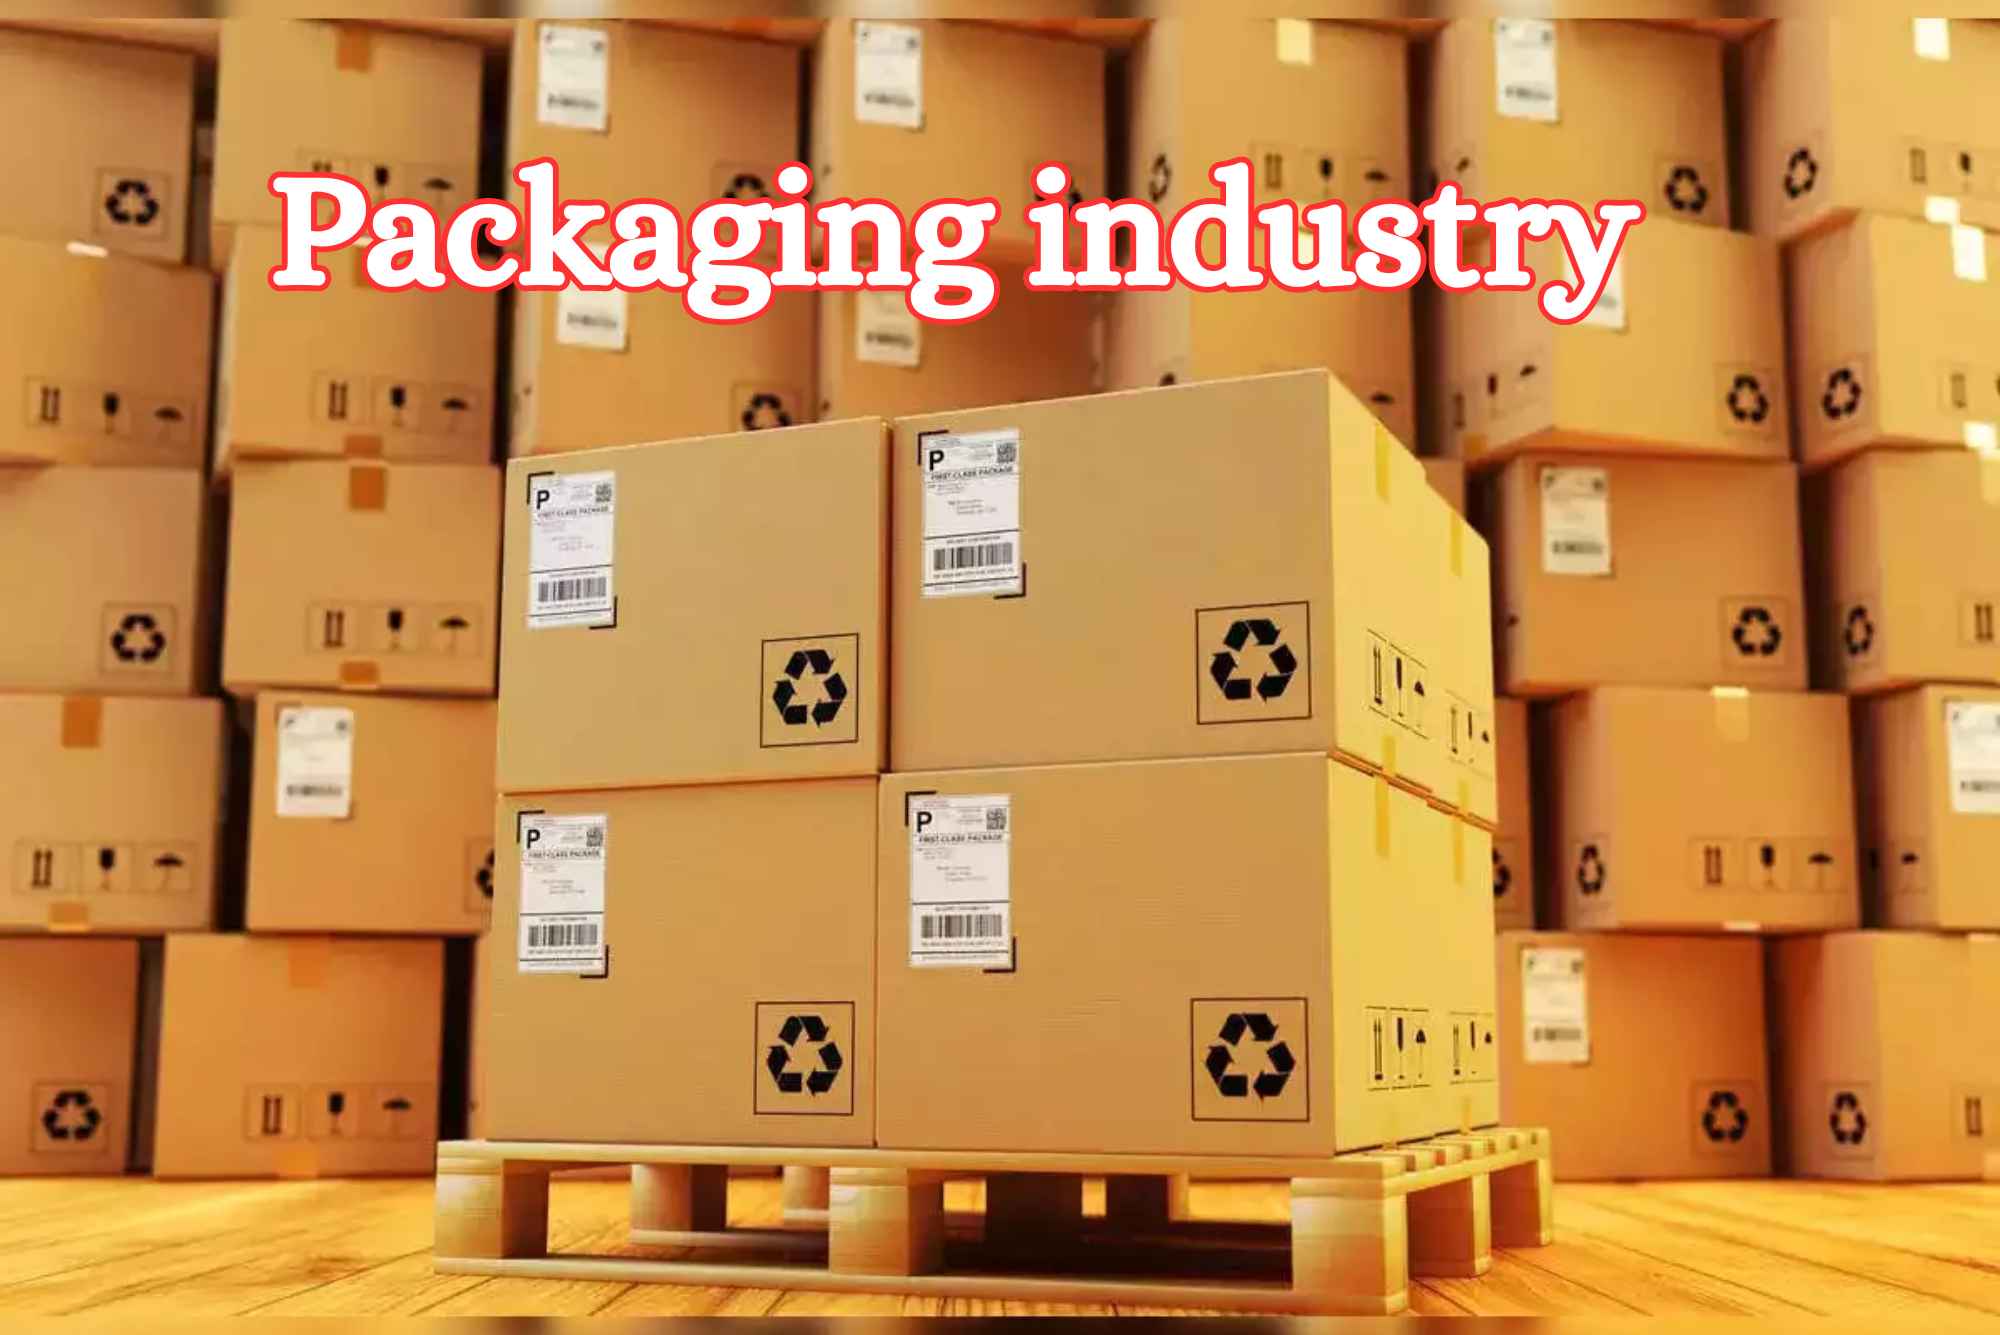 Packaging industry